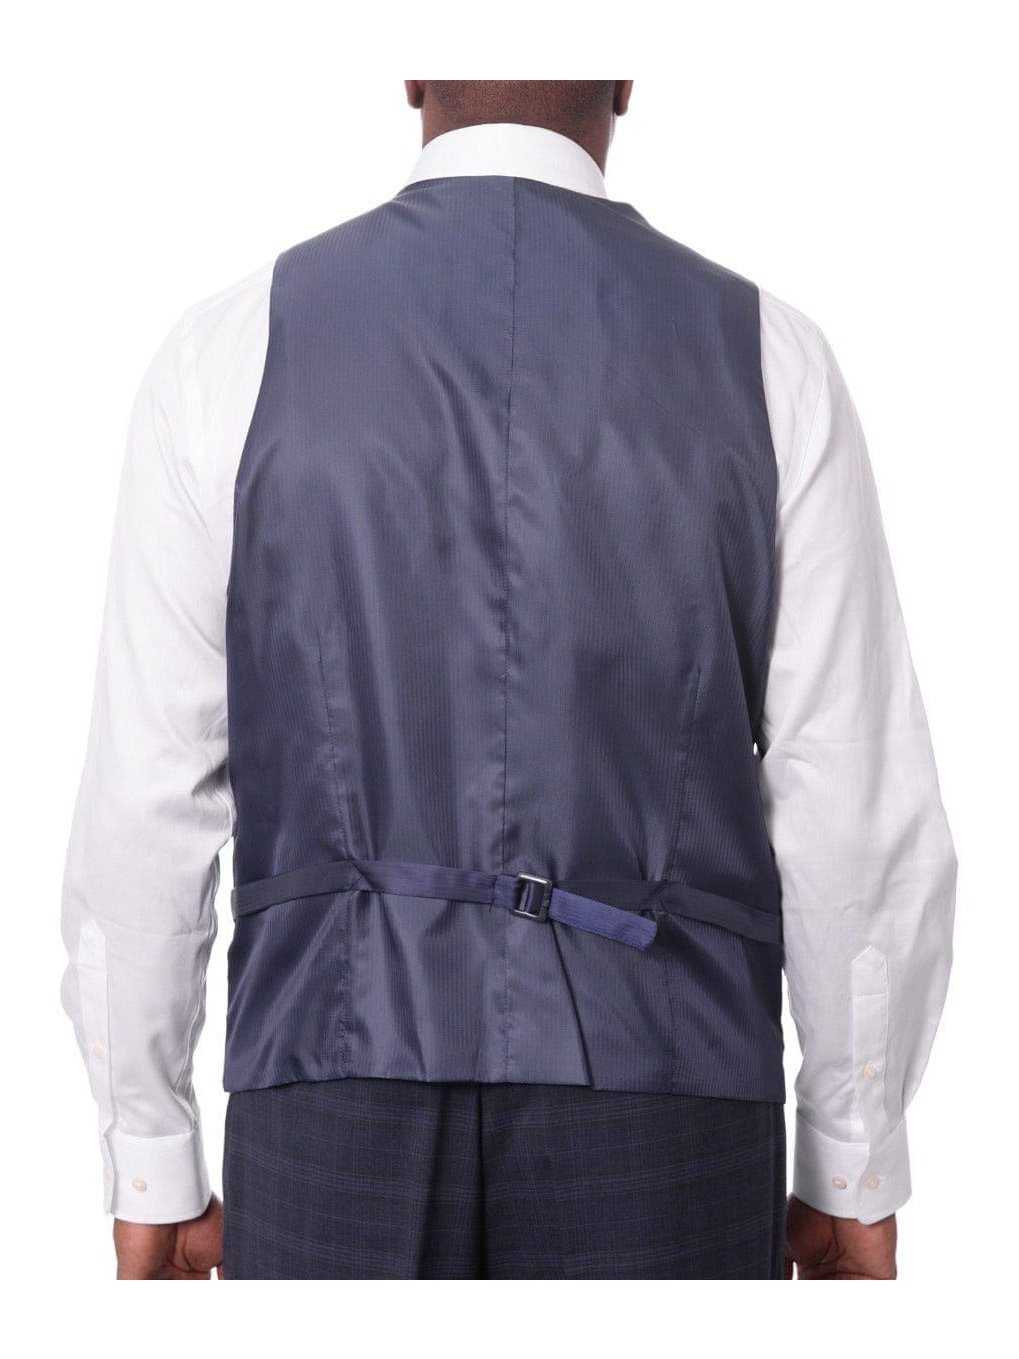 Steven Land Sale Suits Steven Land Mens Blue Plaid 100% Wool Classic Fit 3 Piece Suit